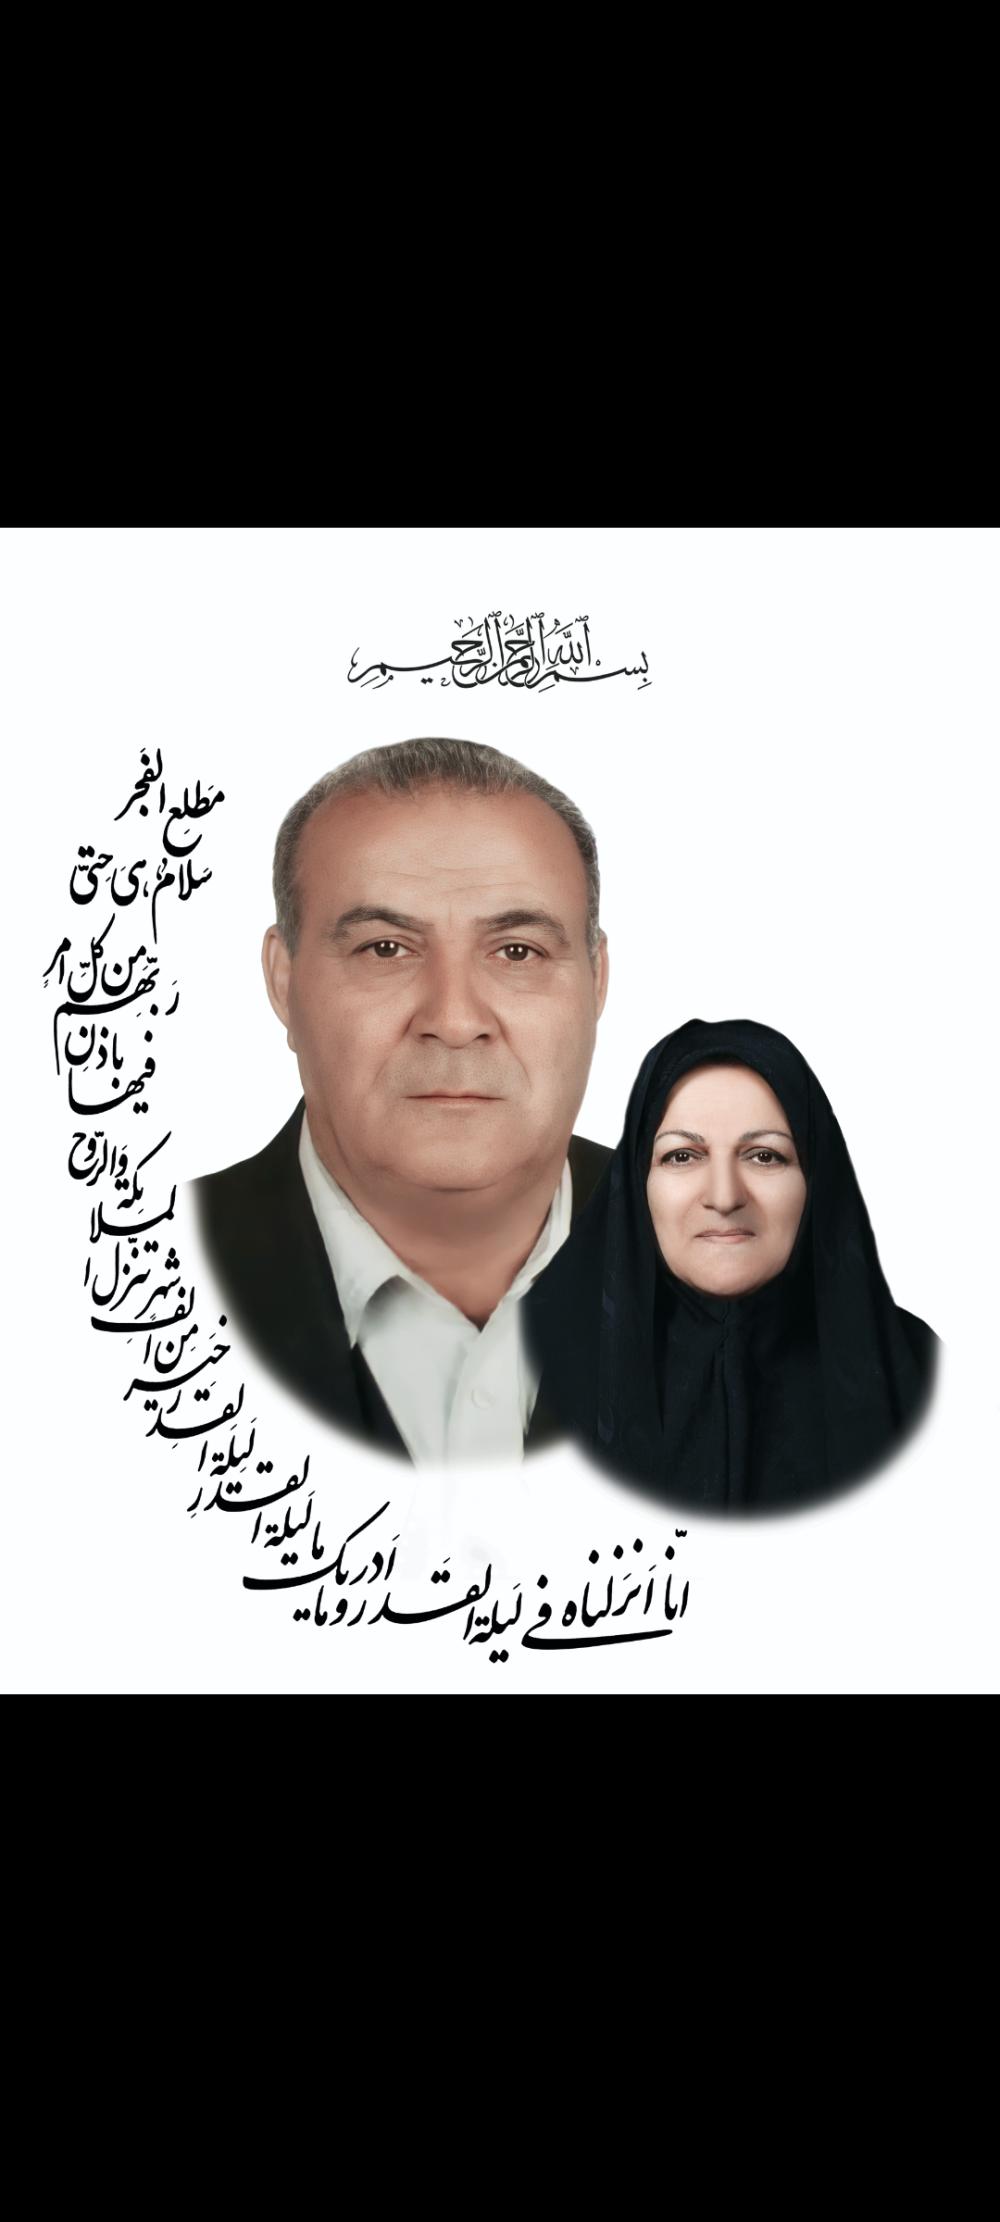 یادبود شادروانان حاج حسن وحاجیه خانم مستاجران وضیائی